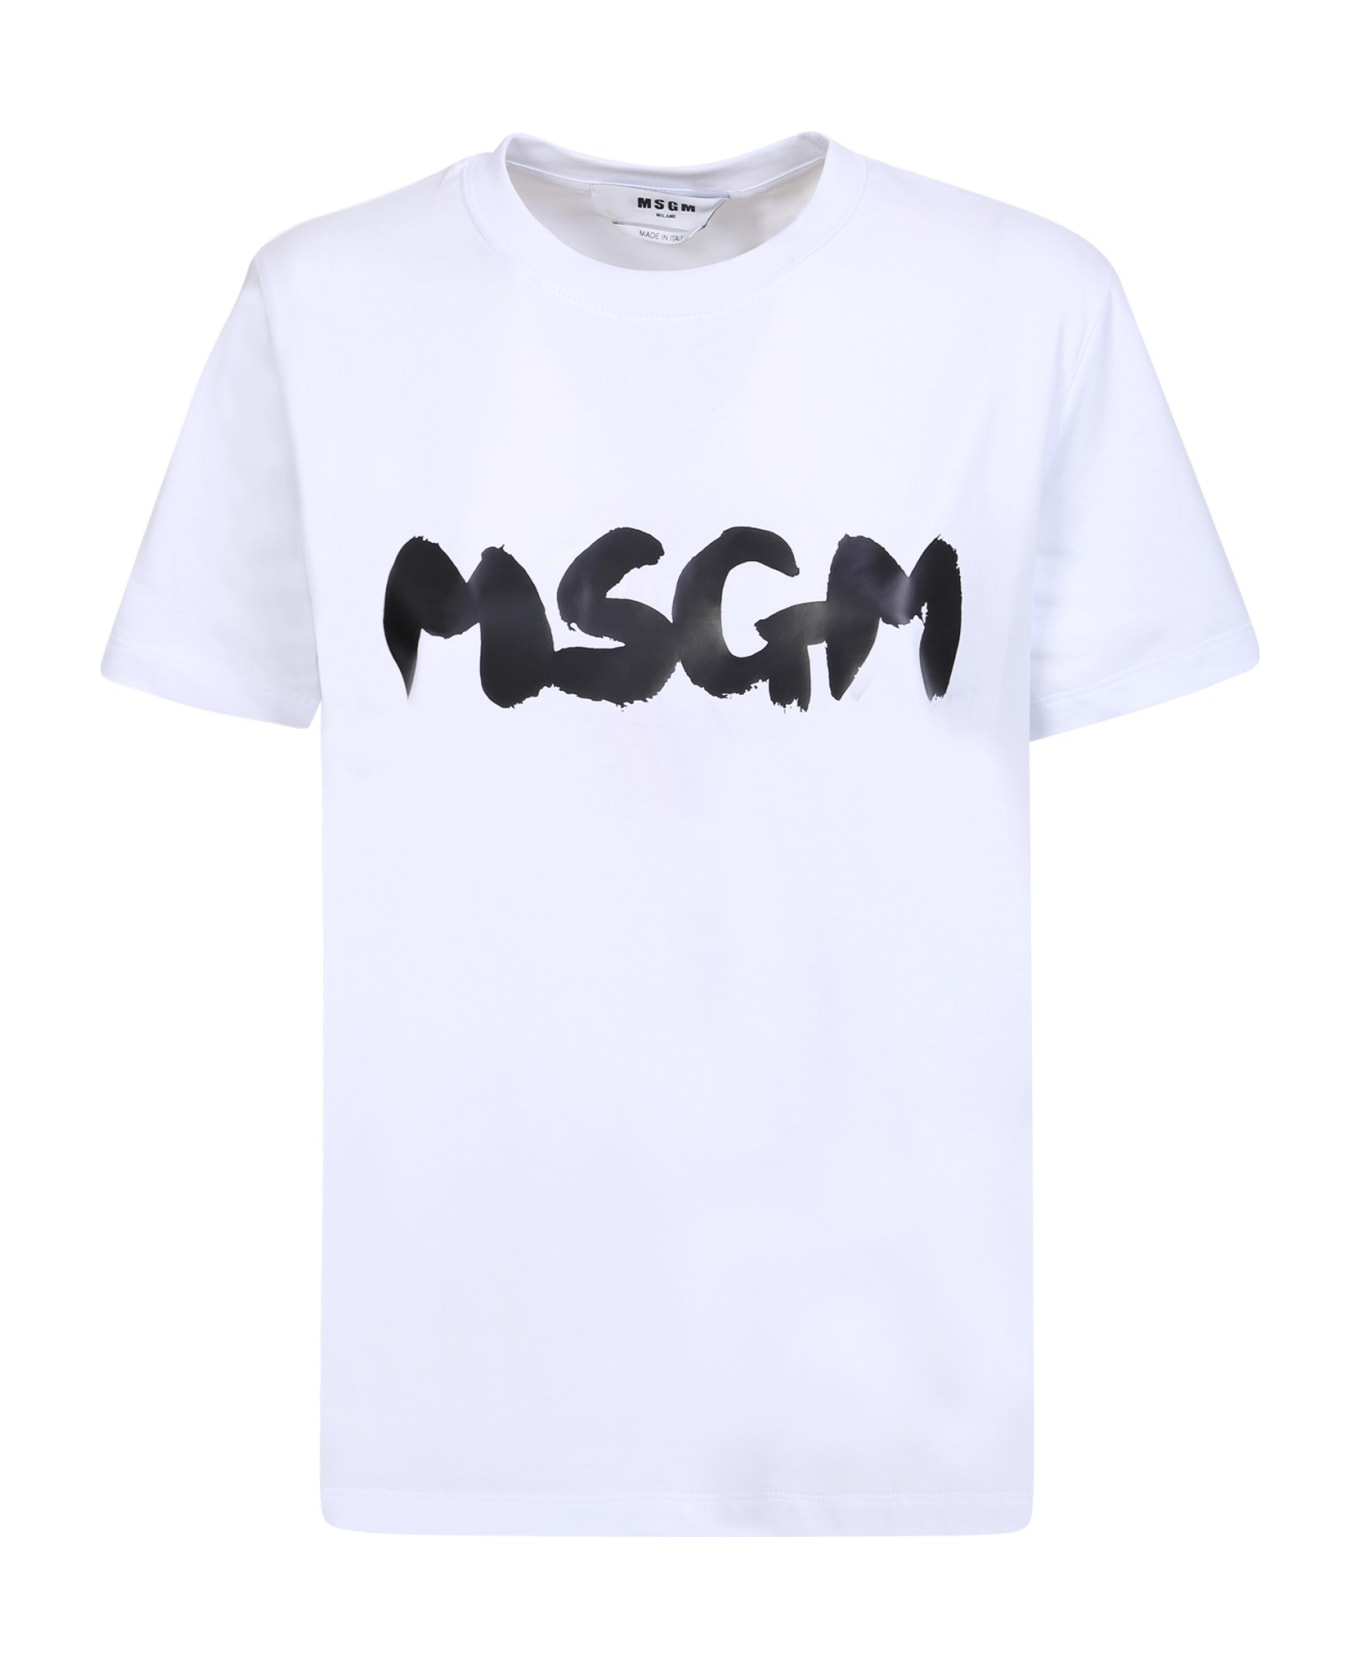 MSGM Bold Logo White And Black T-shirt - White Tシャツ